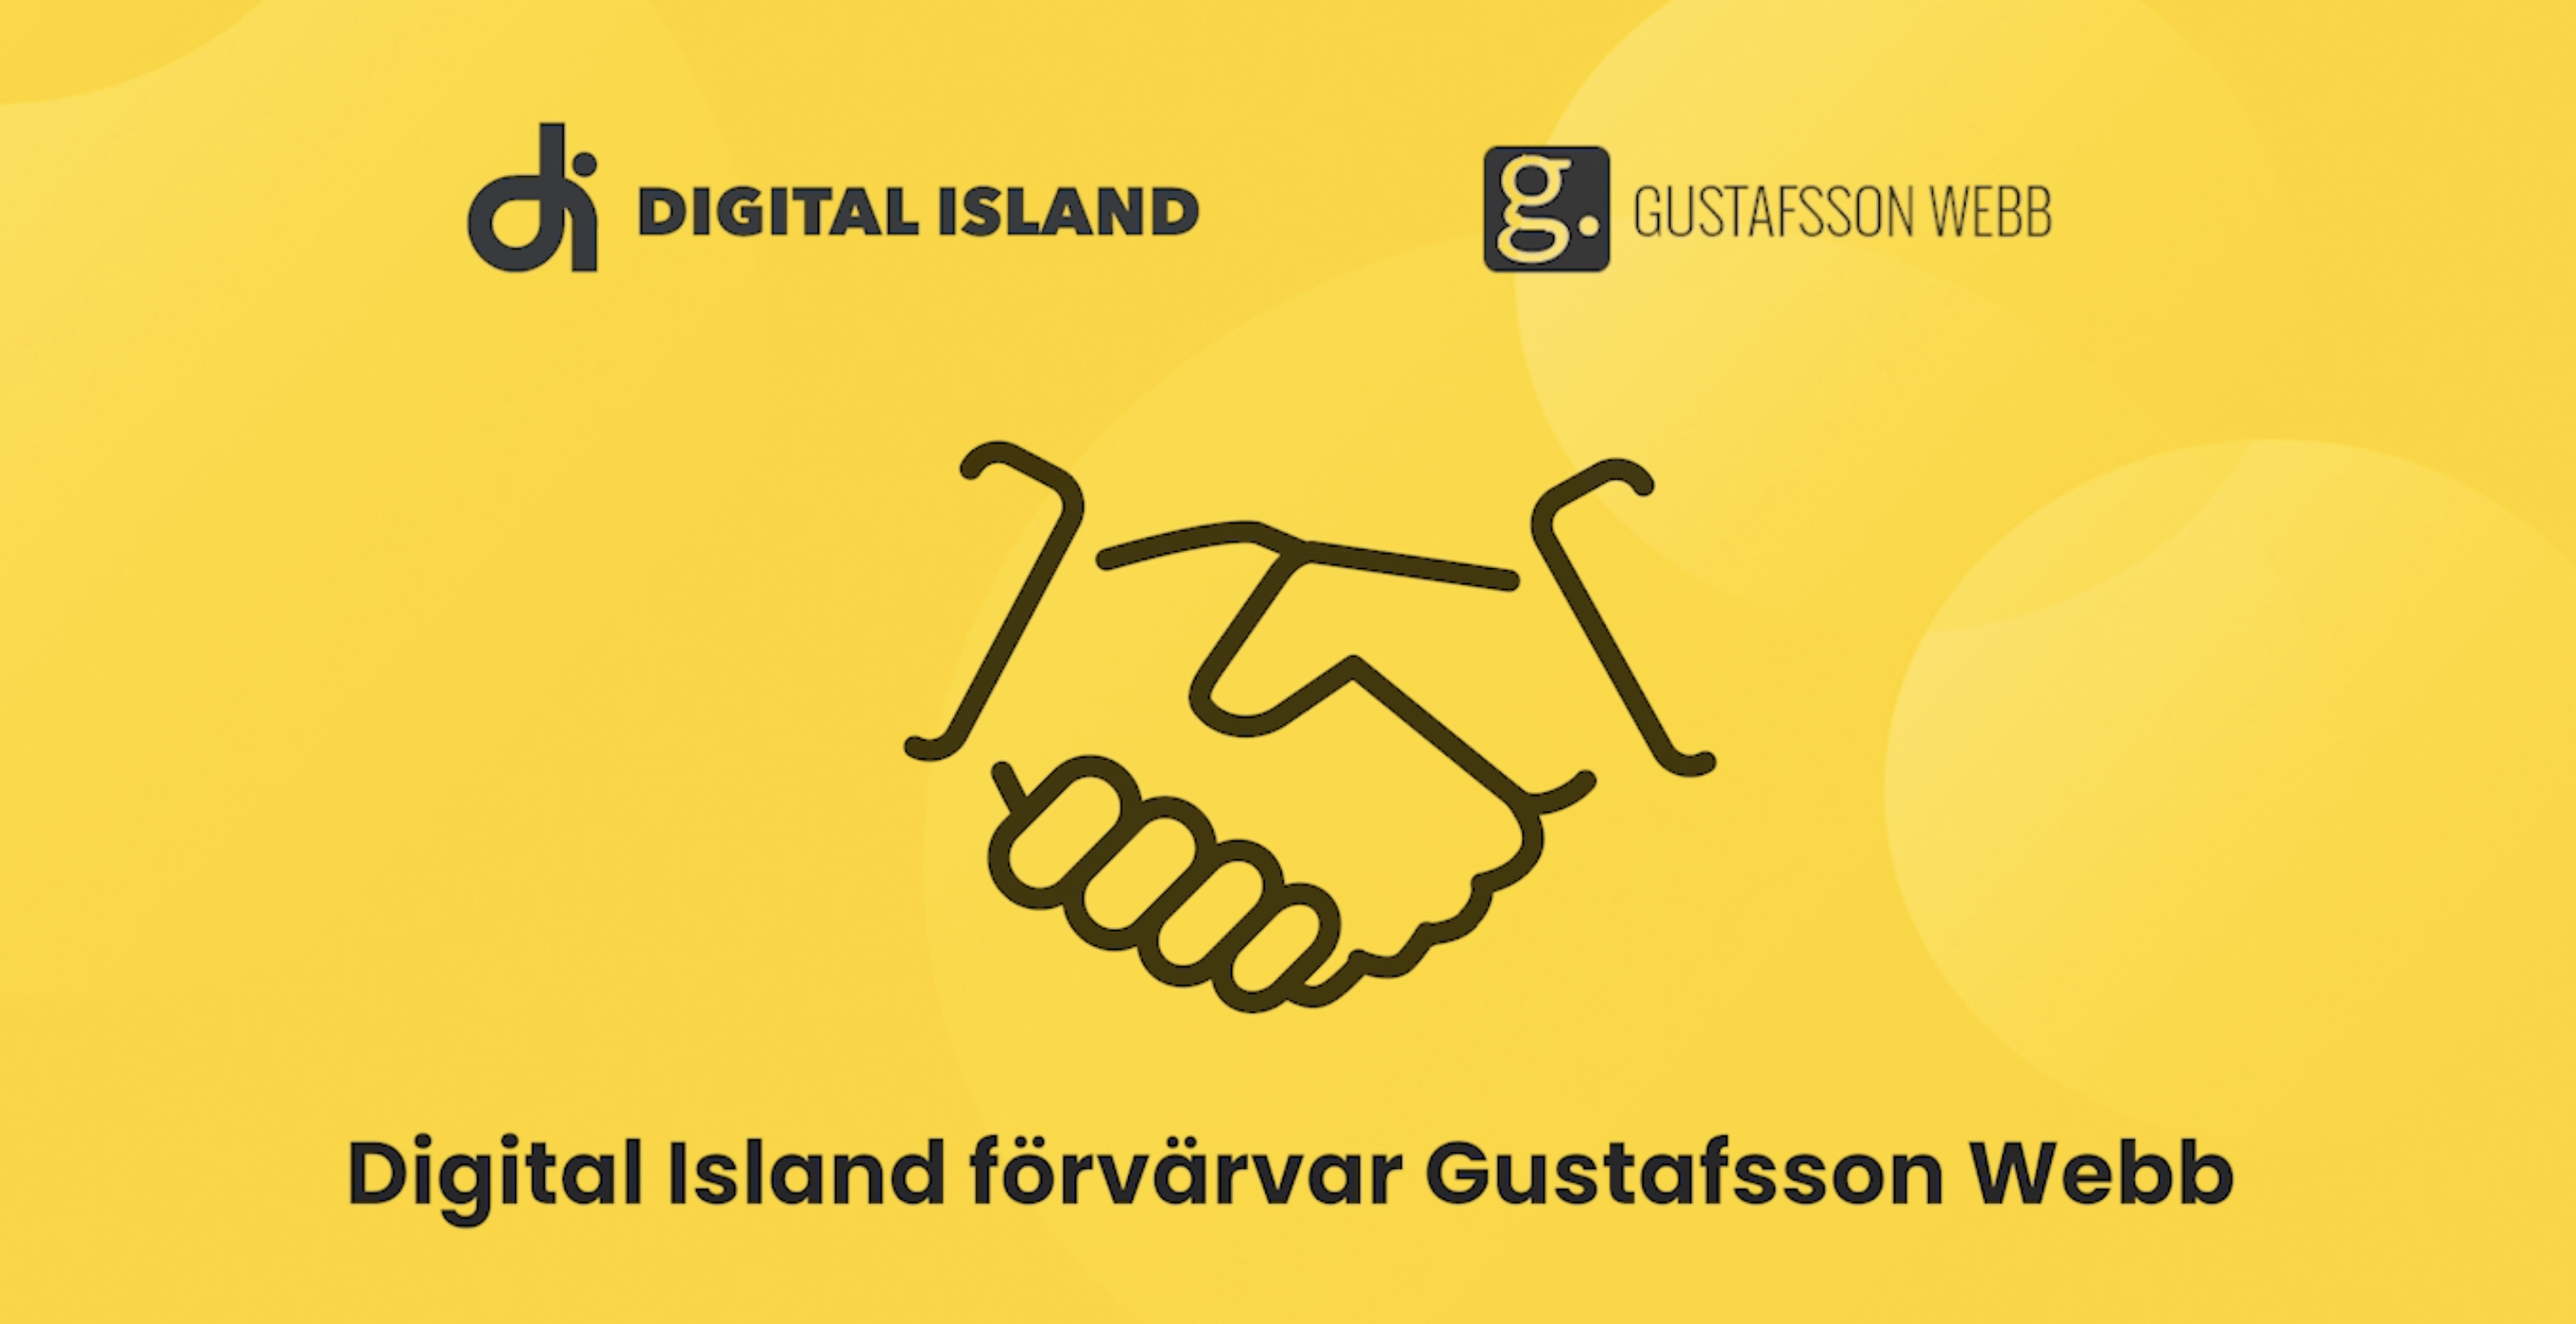 Digital Island förvärvar Gustafsson Webb